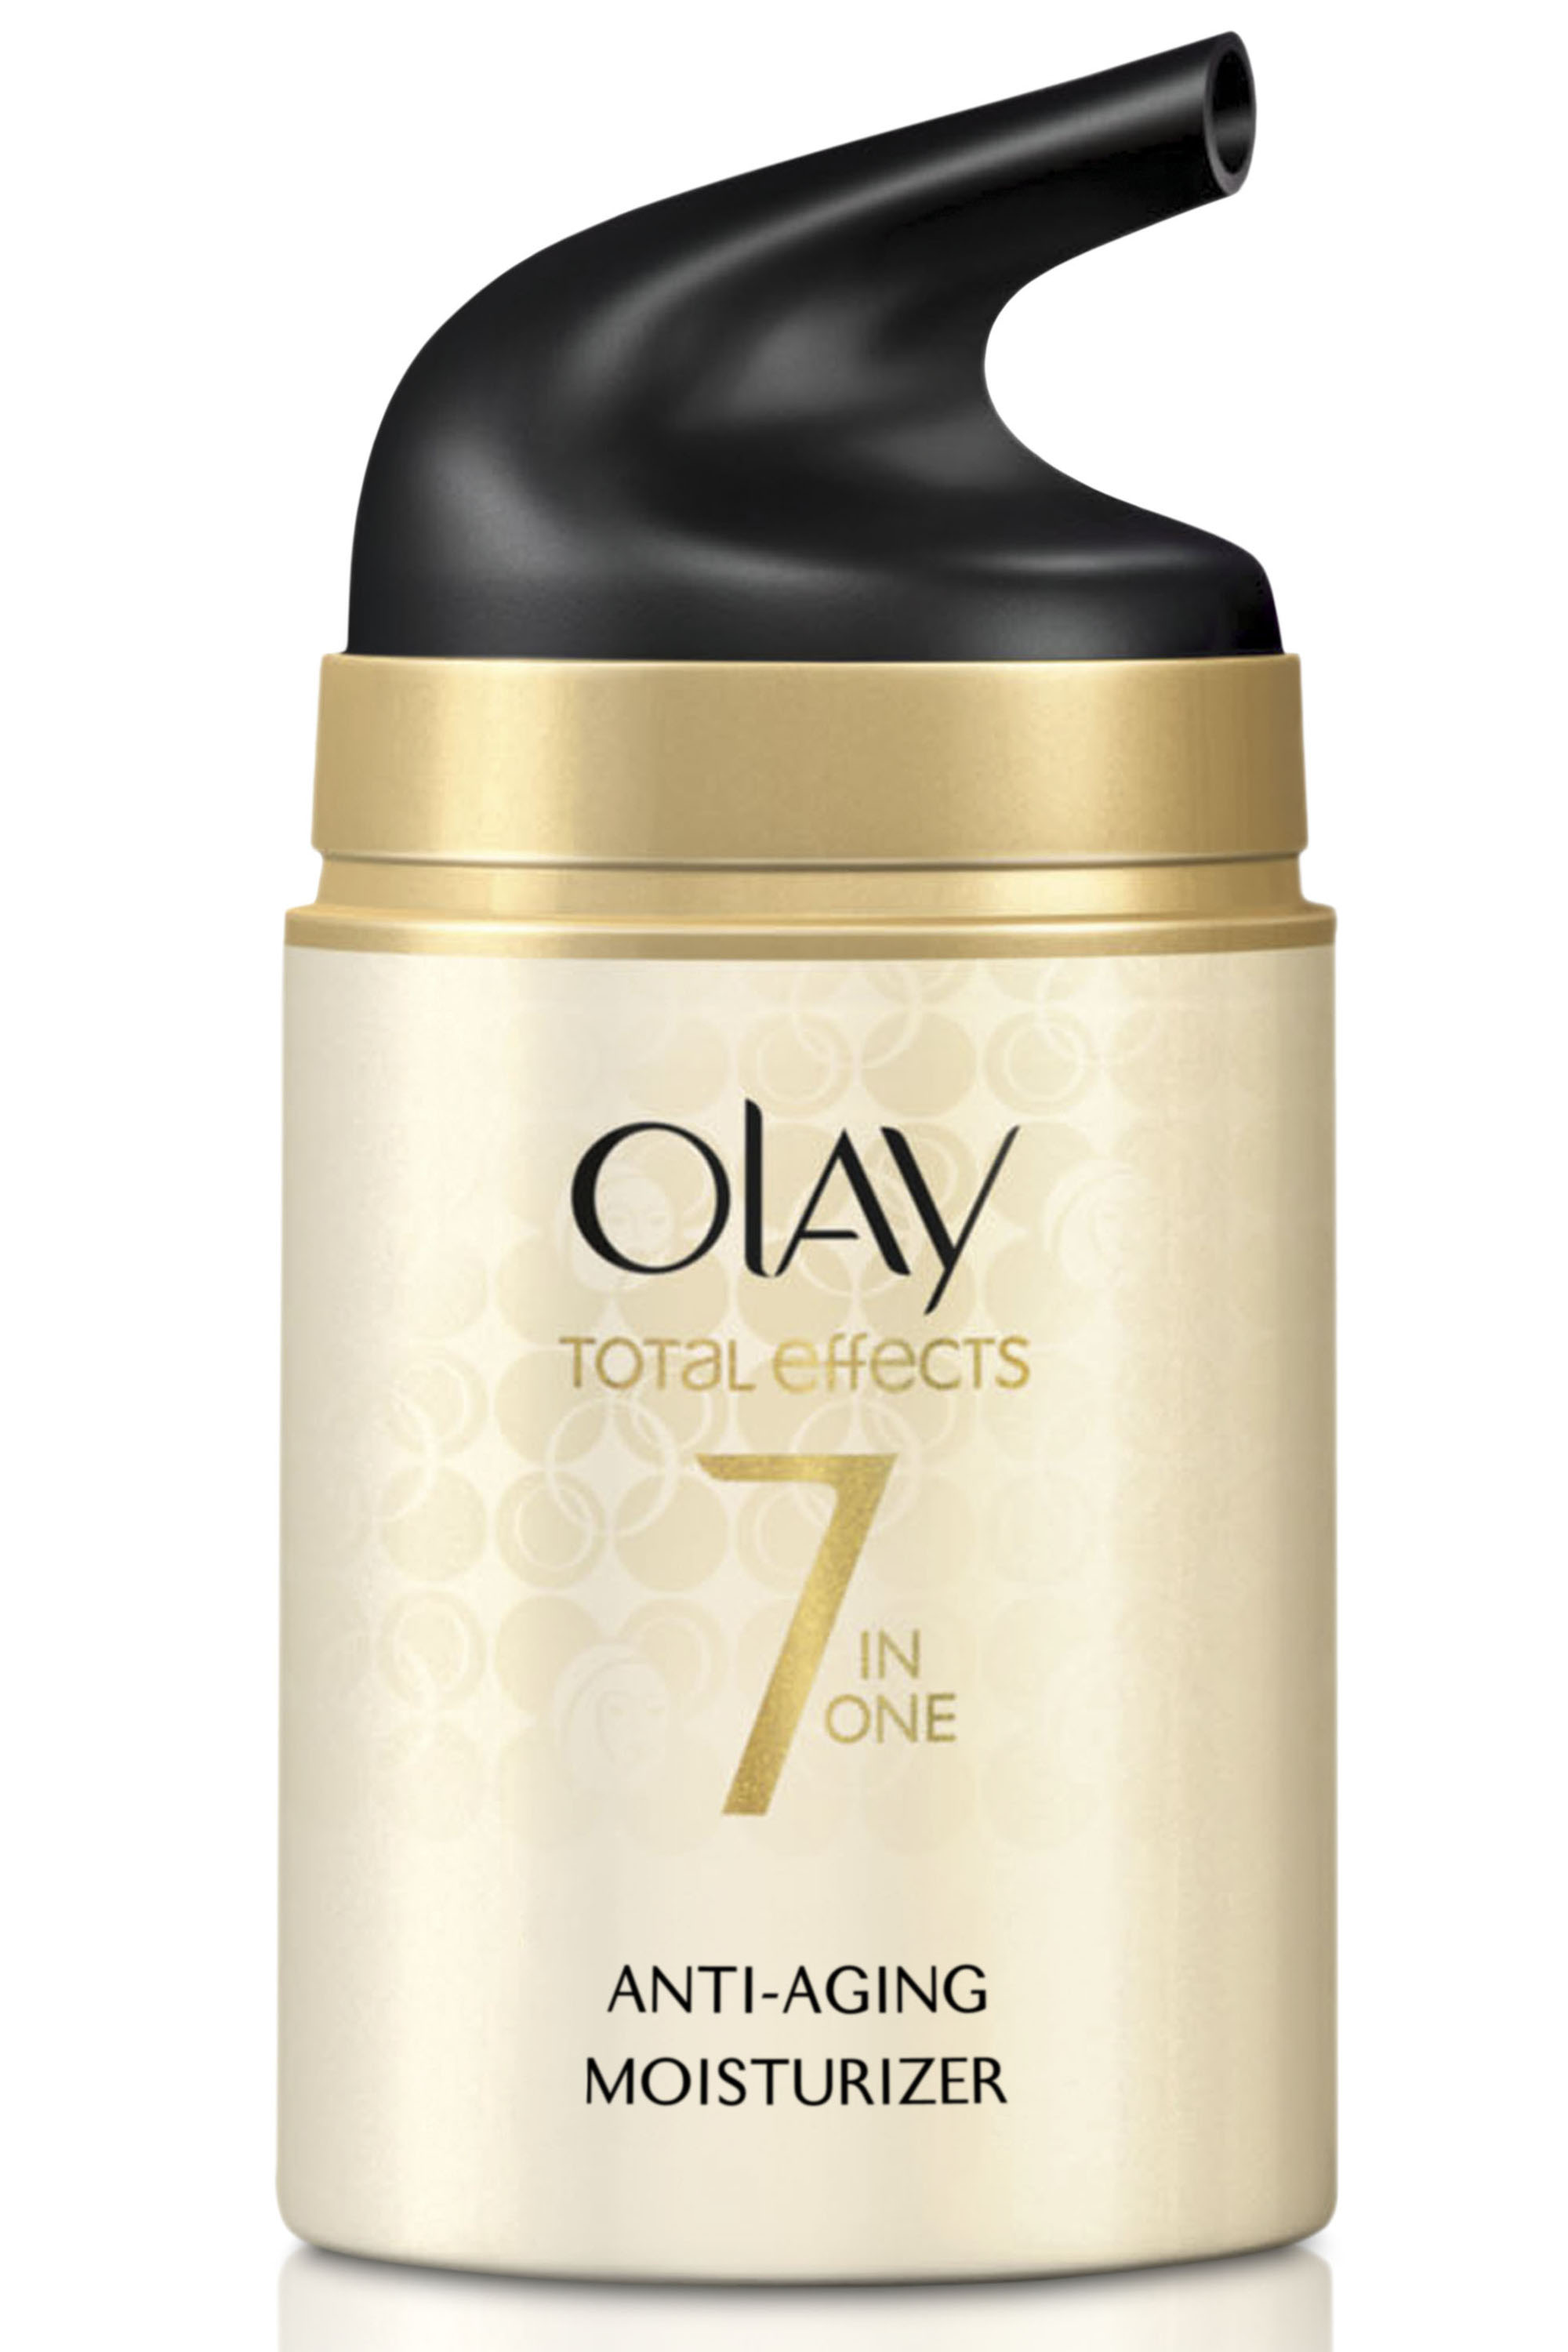 Oil of olay facial moisturizer